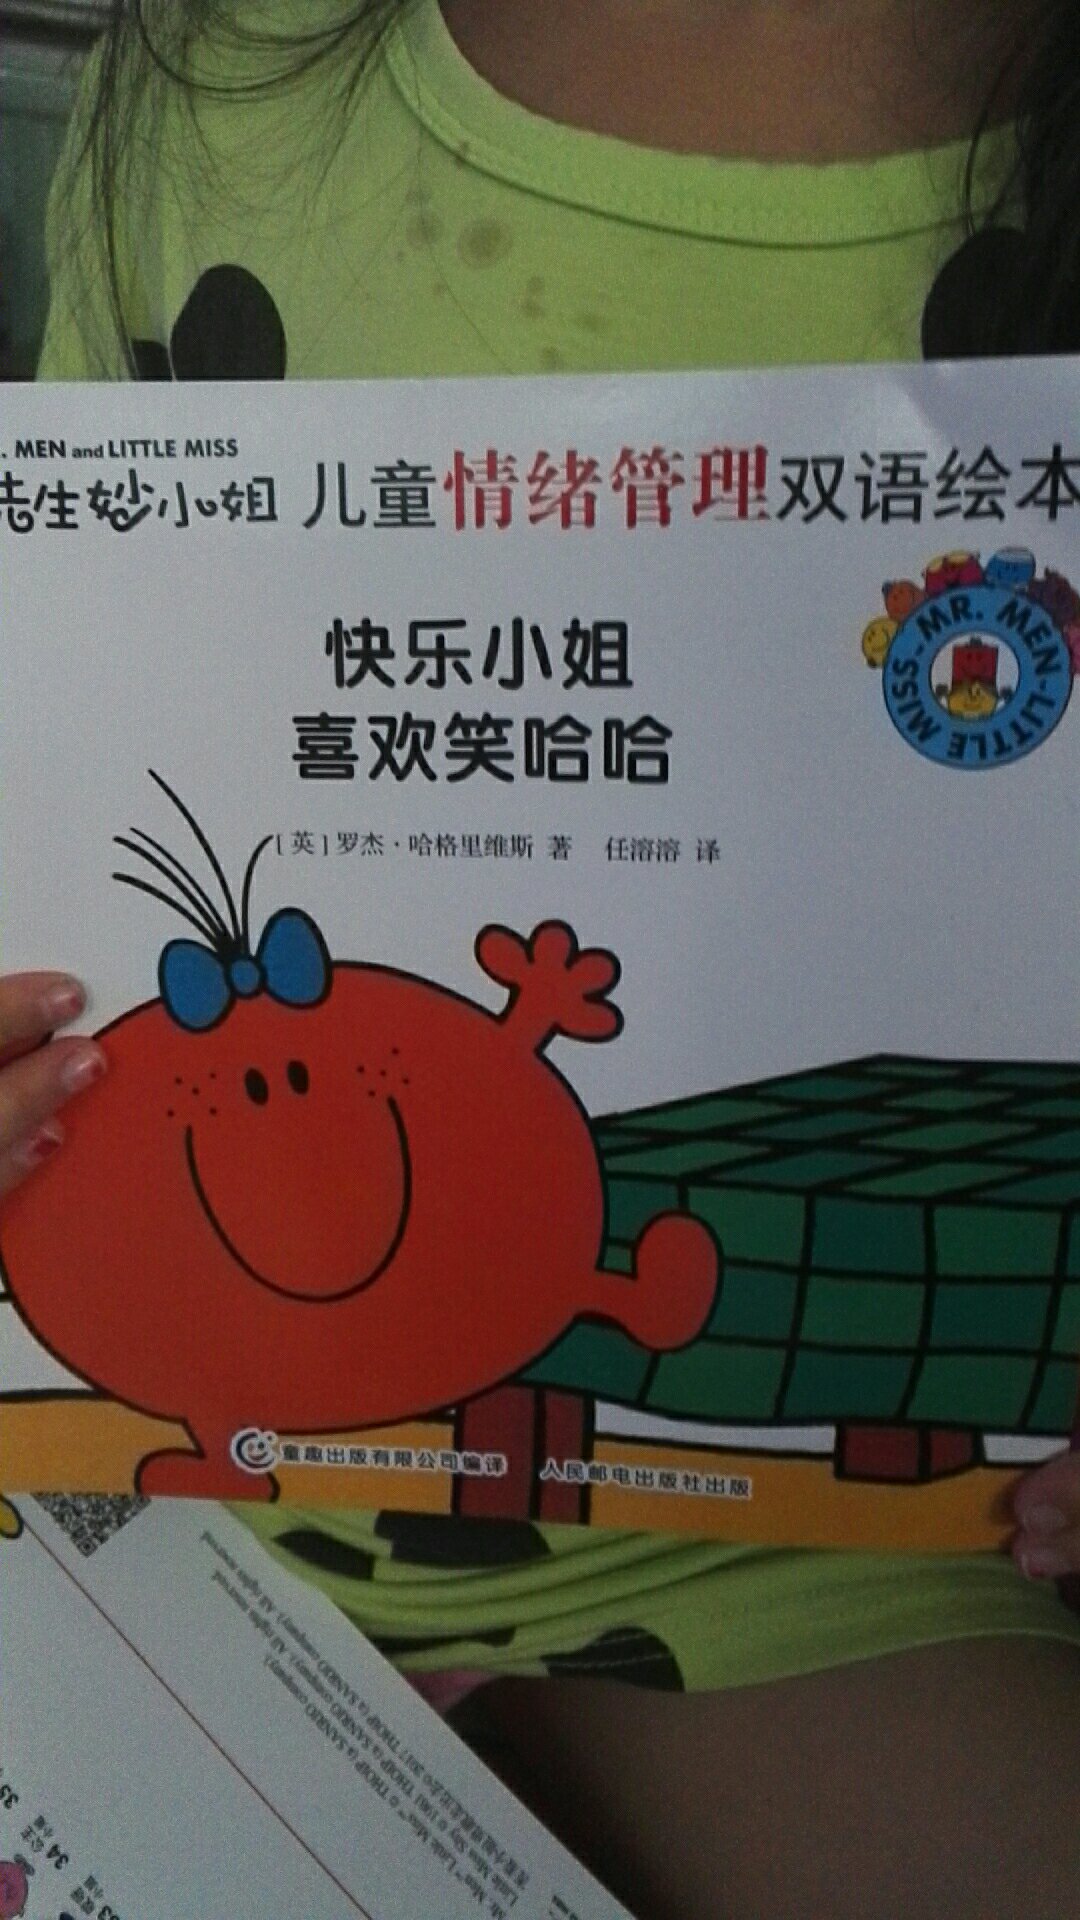 孩子很喜欢，中英文，可以很好的练习英文阅读。不错欧噢。